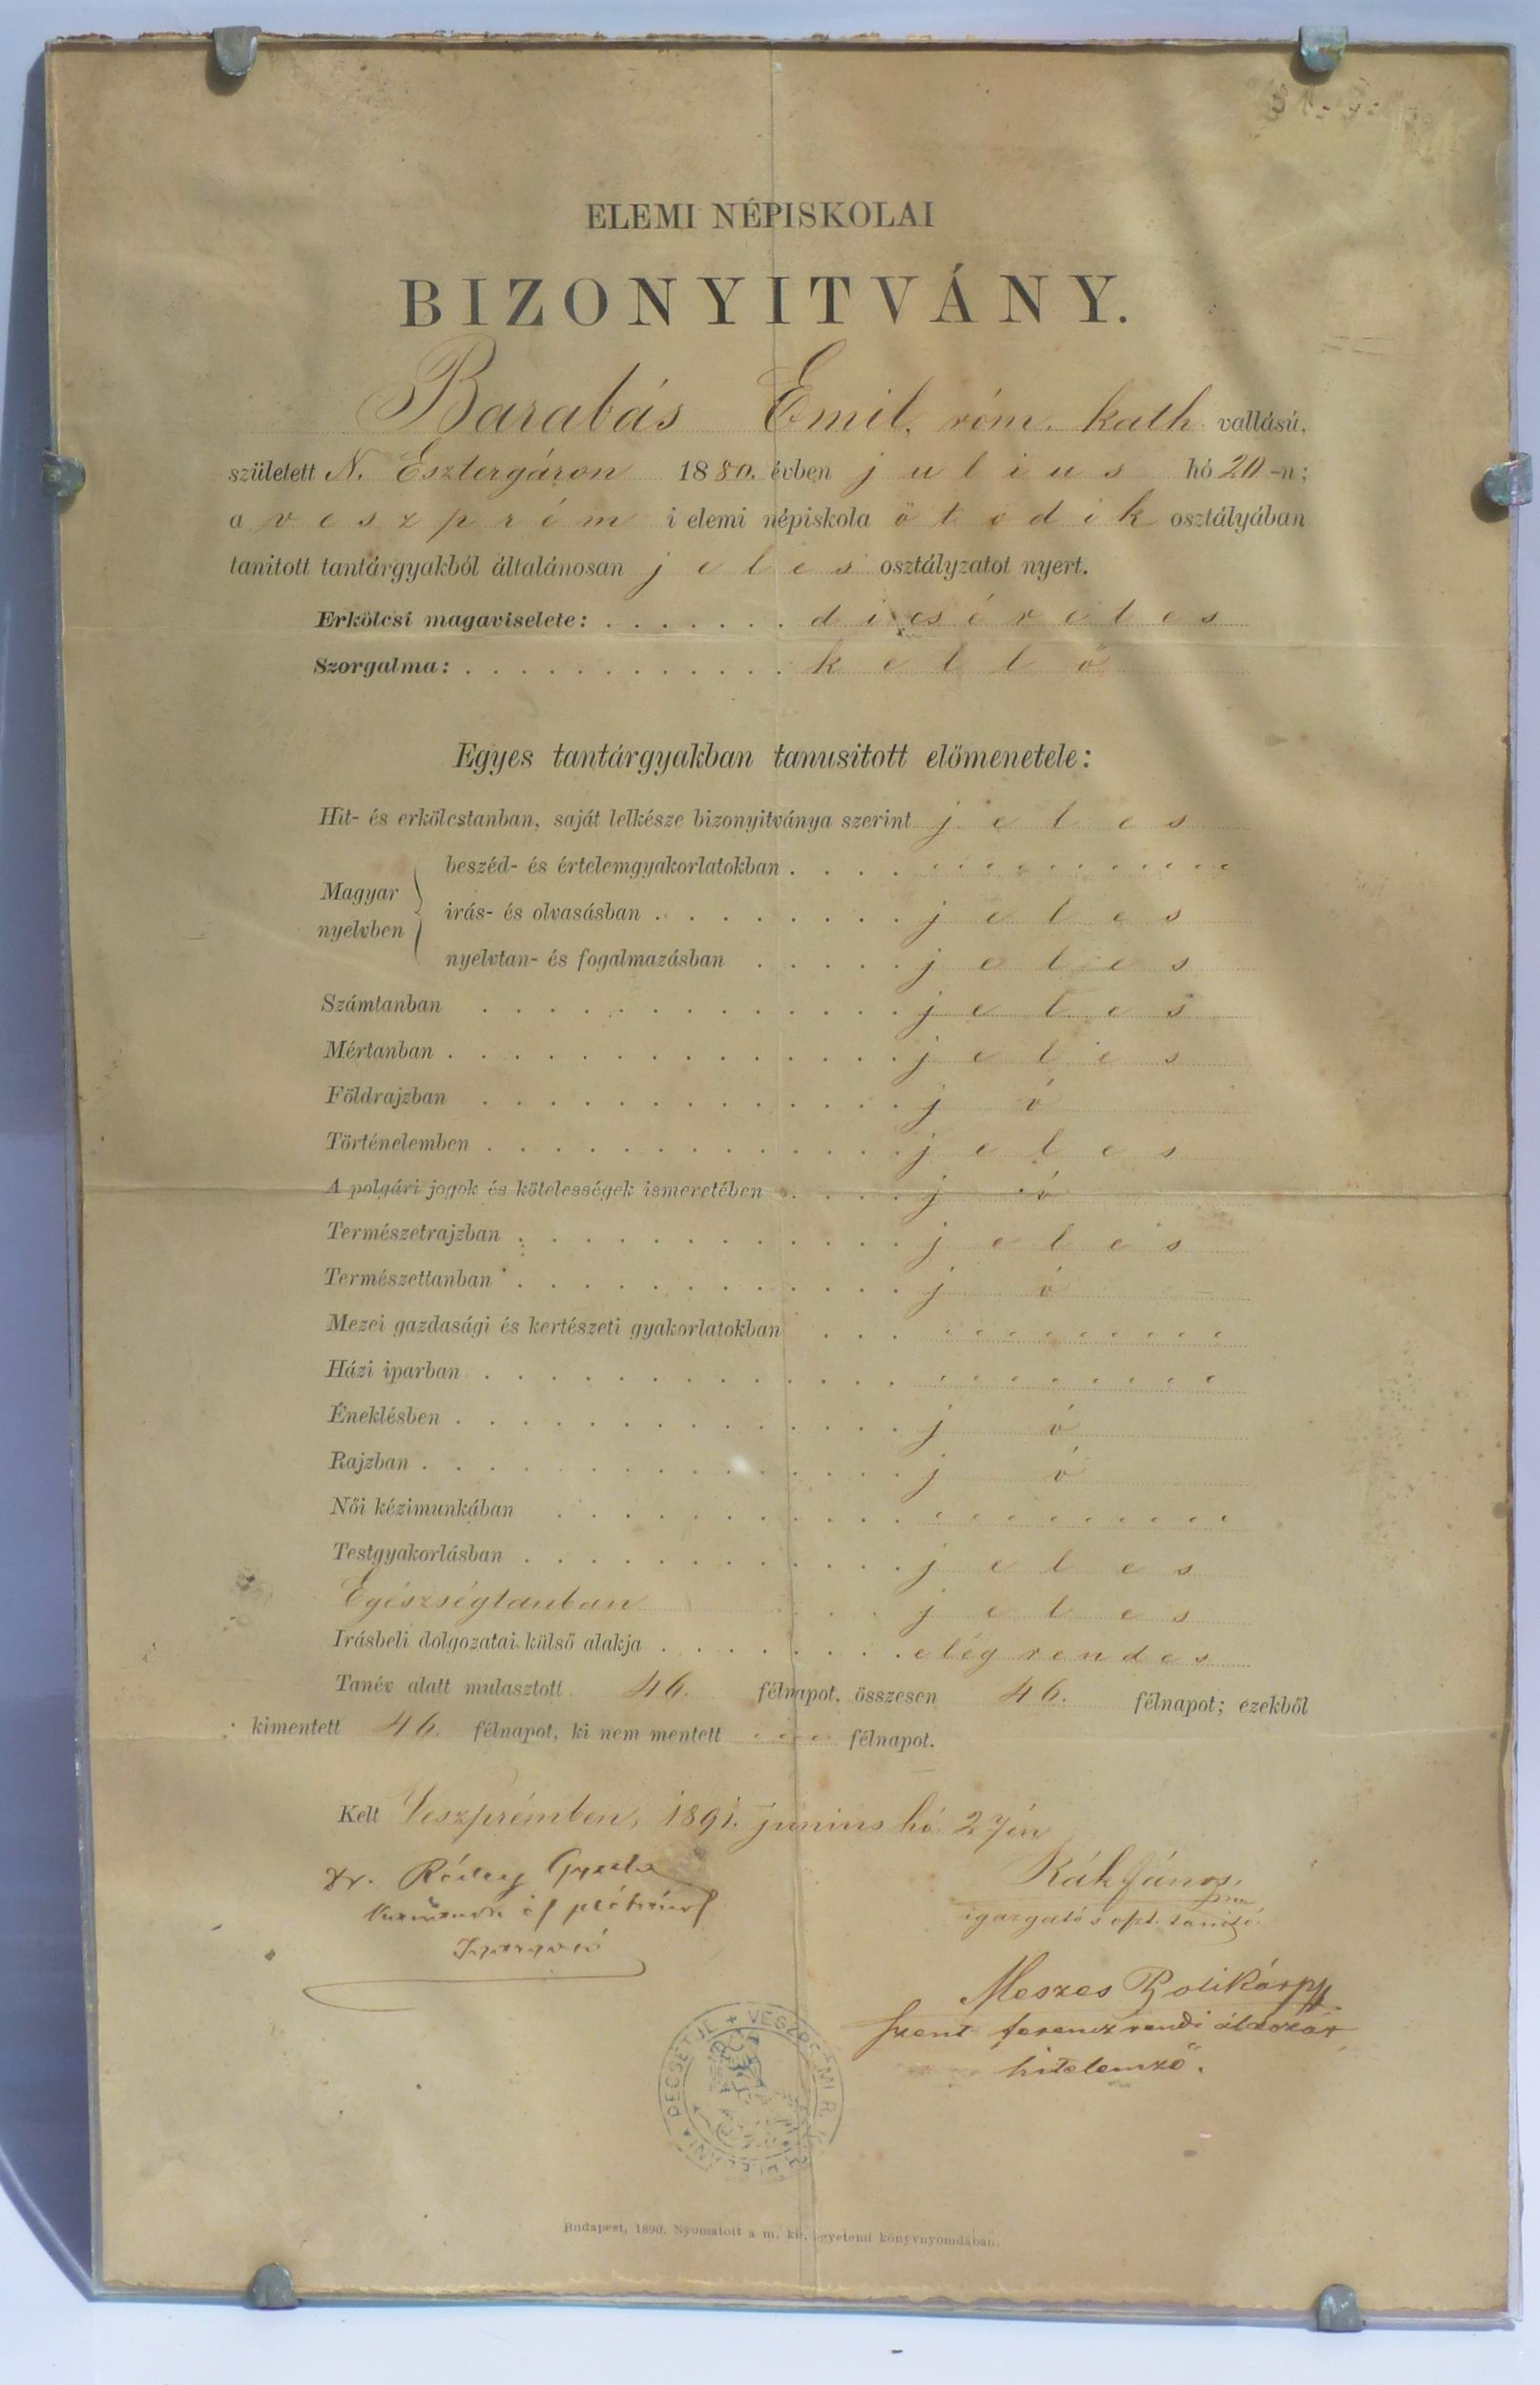 Elemi népiskolai bizonyítvány (Tapolcai Városi Múzeum CC BY-NC-SA)